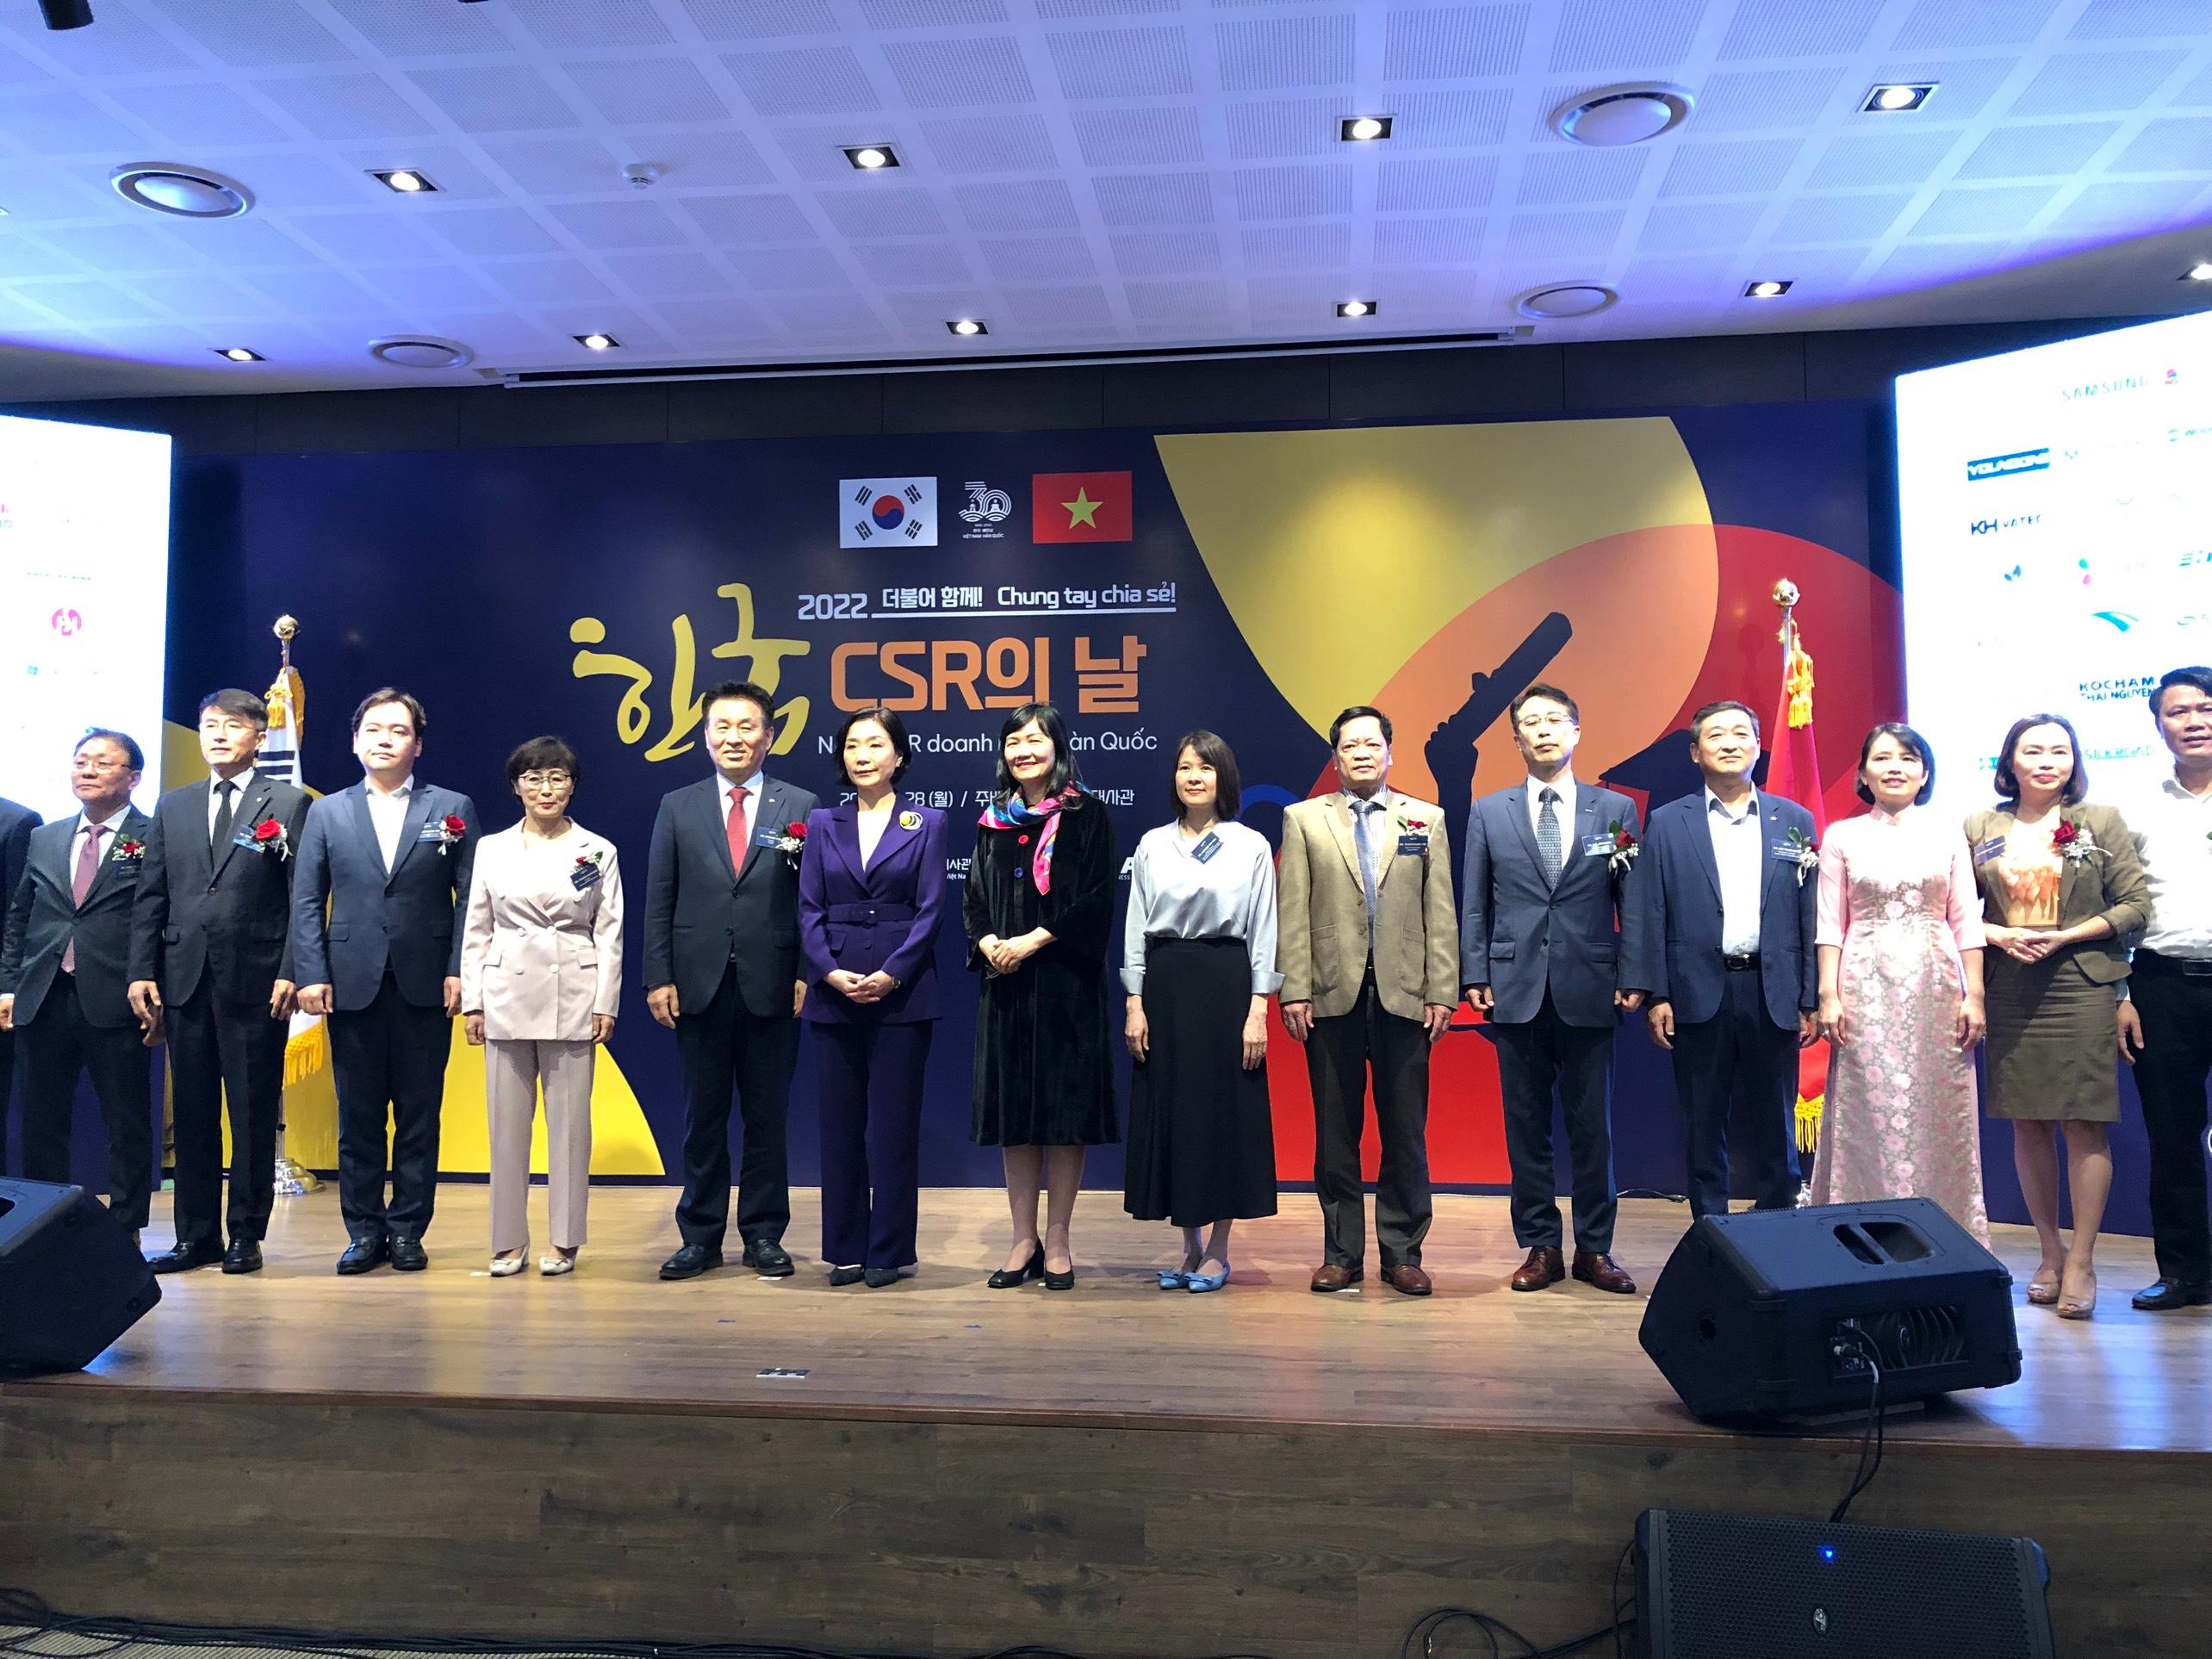 Ngày CSR doanh nhân Hàn Quốc - Chung tay chia sẻ năm 2022.